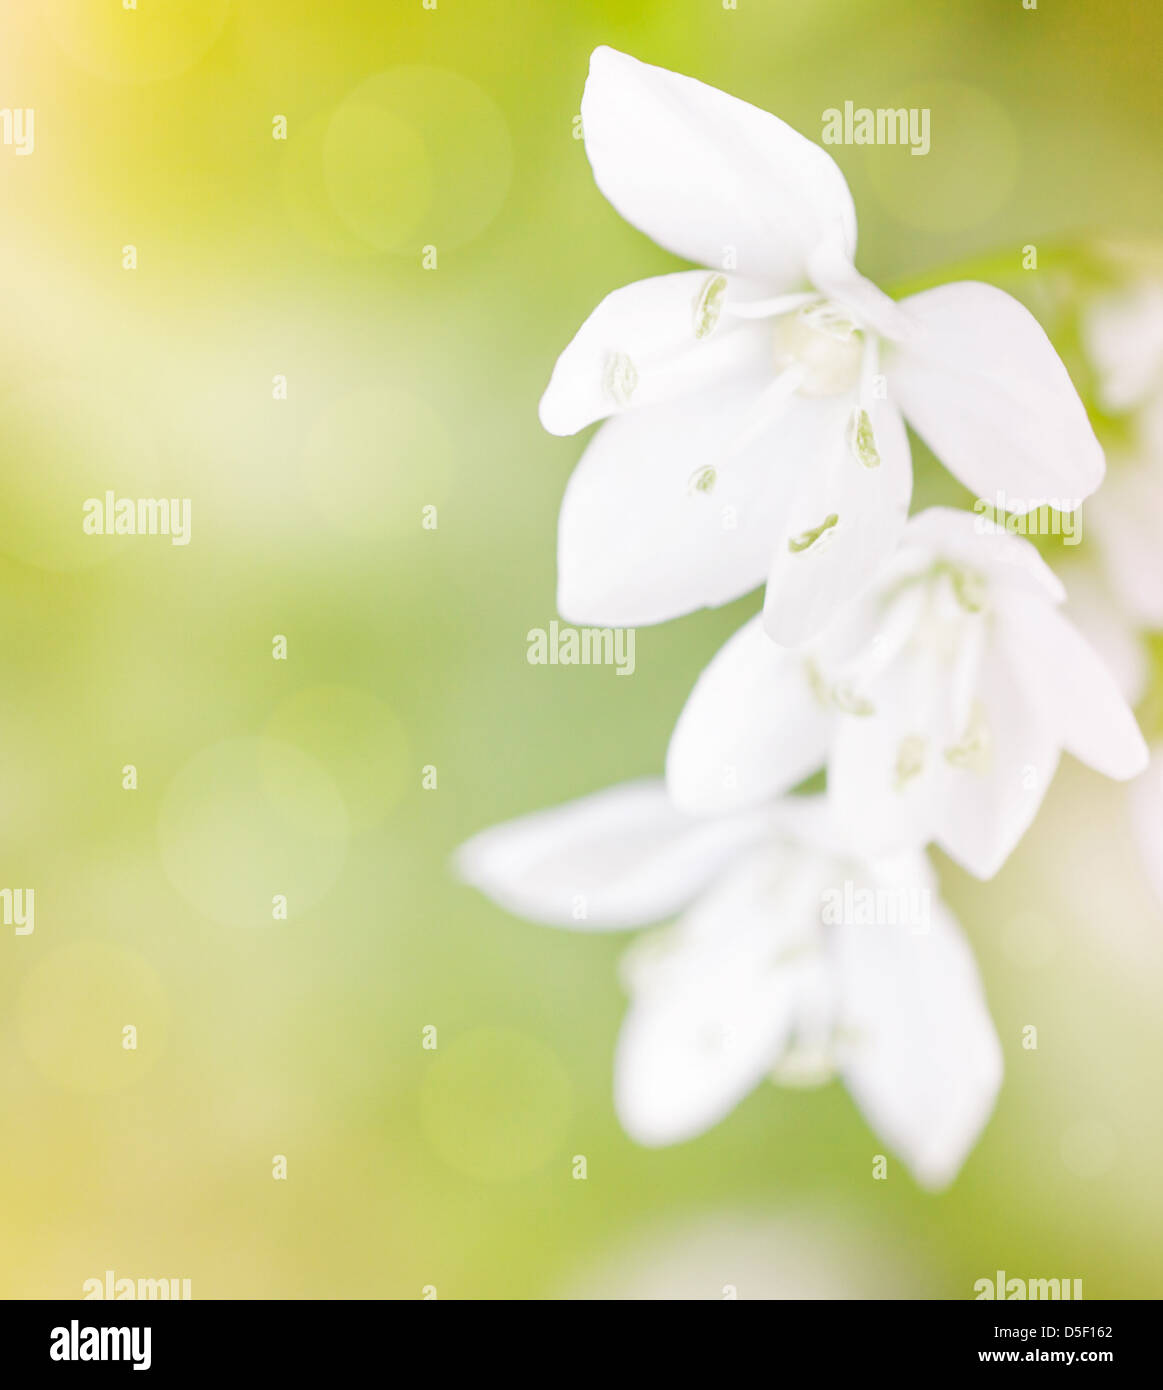 Schöne zarte weiße Blüten über grün weich zu konzentrieren, Hintergrund, erste Zeit Frühlingsblume, floral Grenze Stockfoto